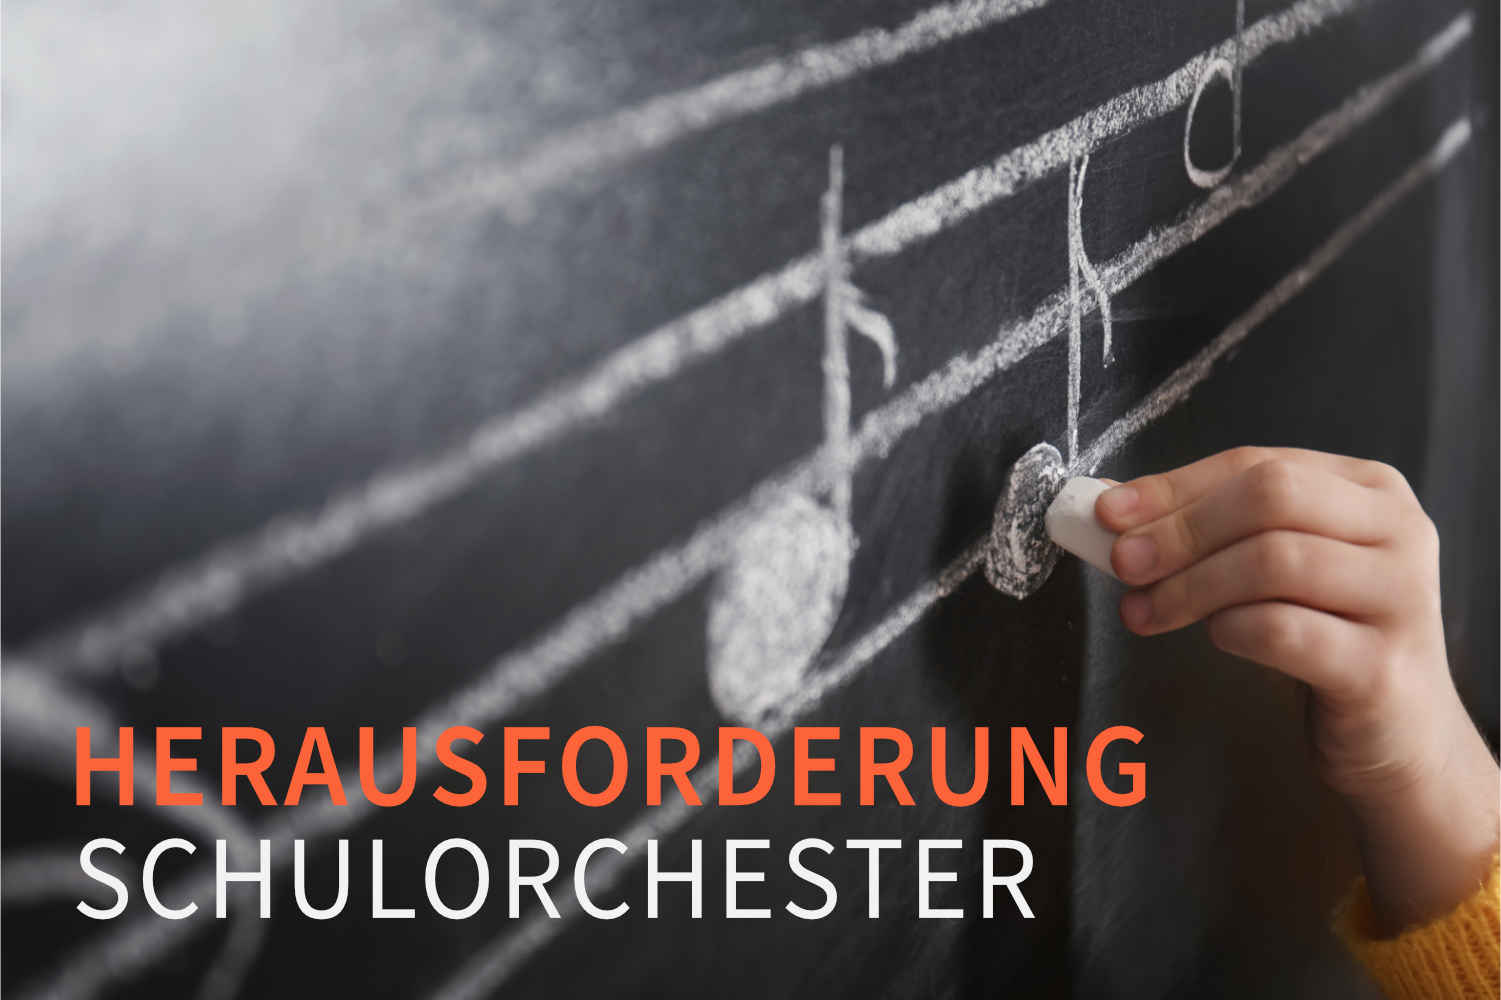 Herausforderung Schulorchester: ein Interview übers Arrangieren mit Thomas Stapf